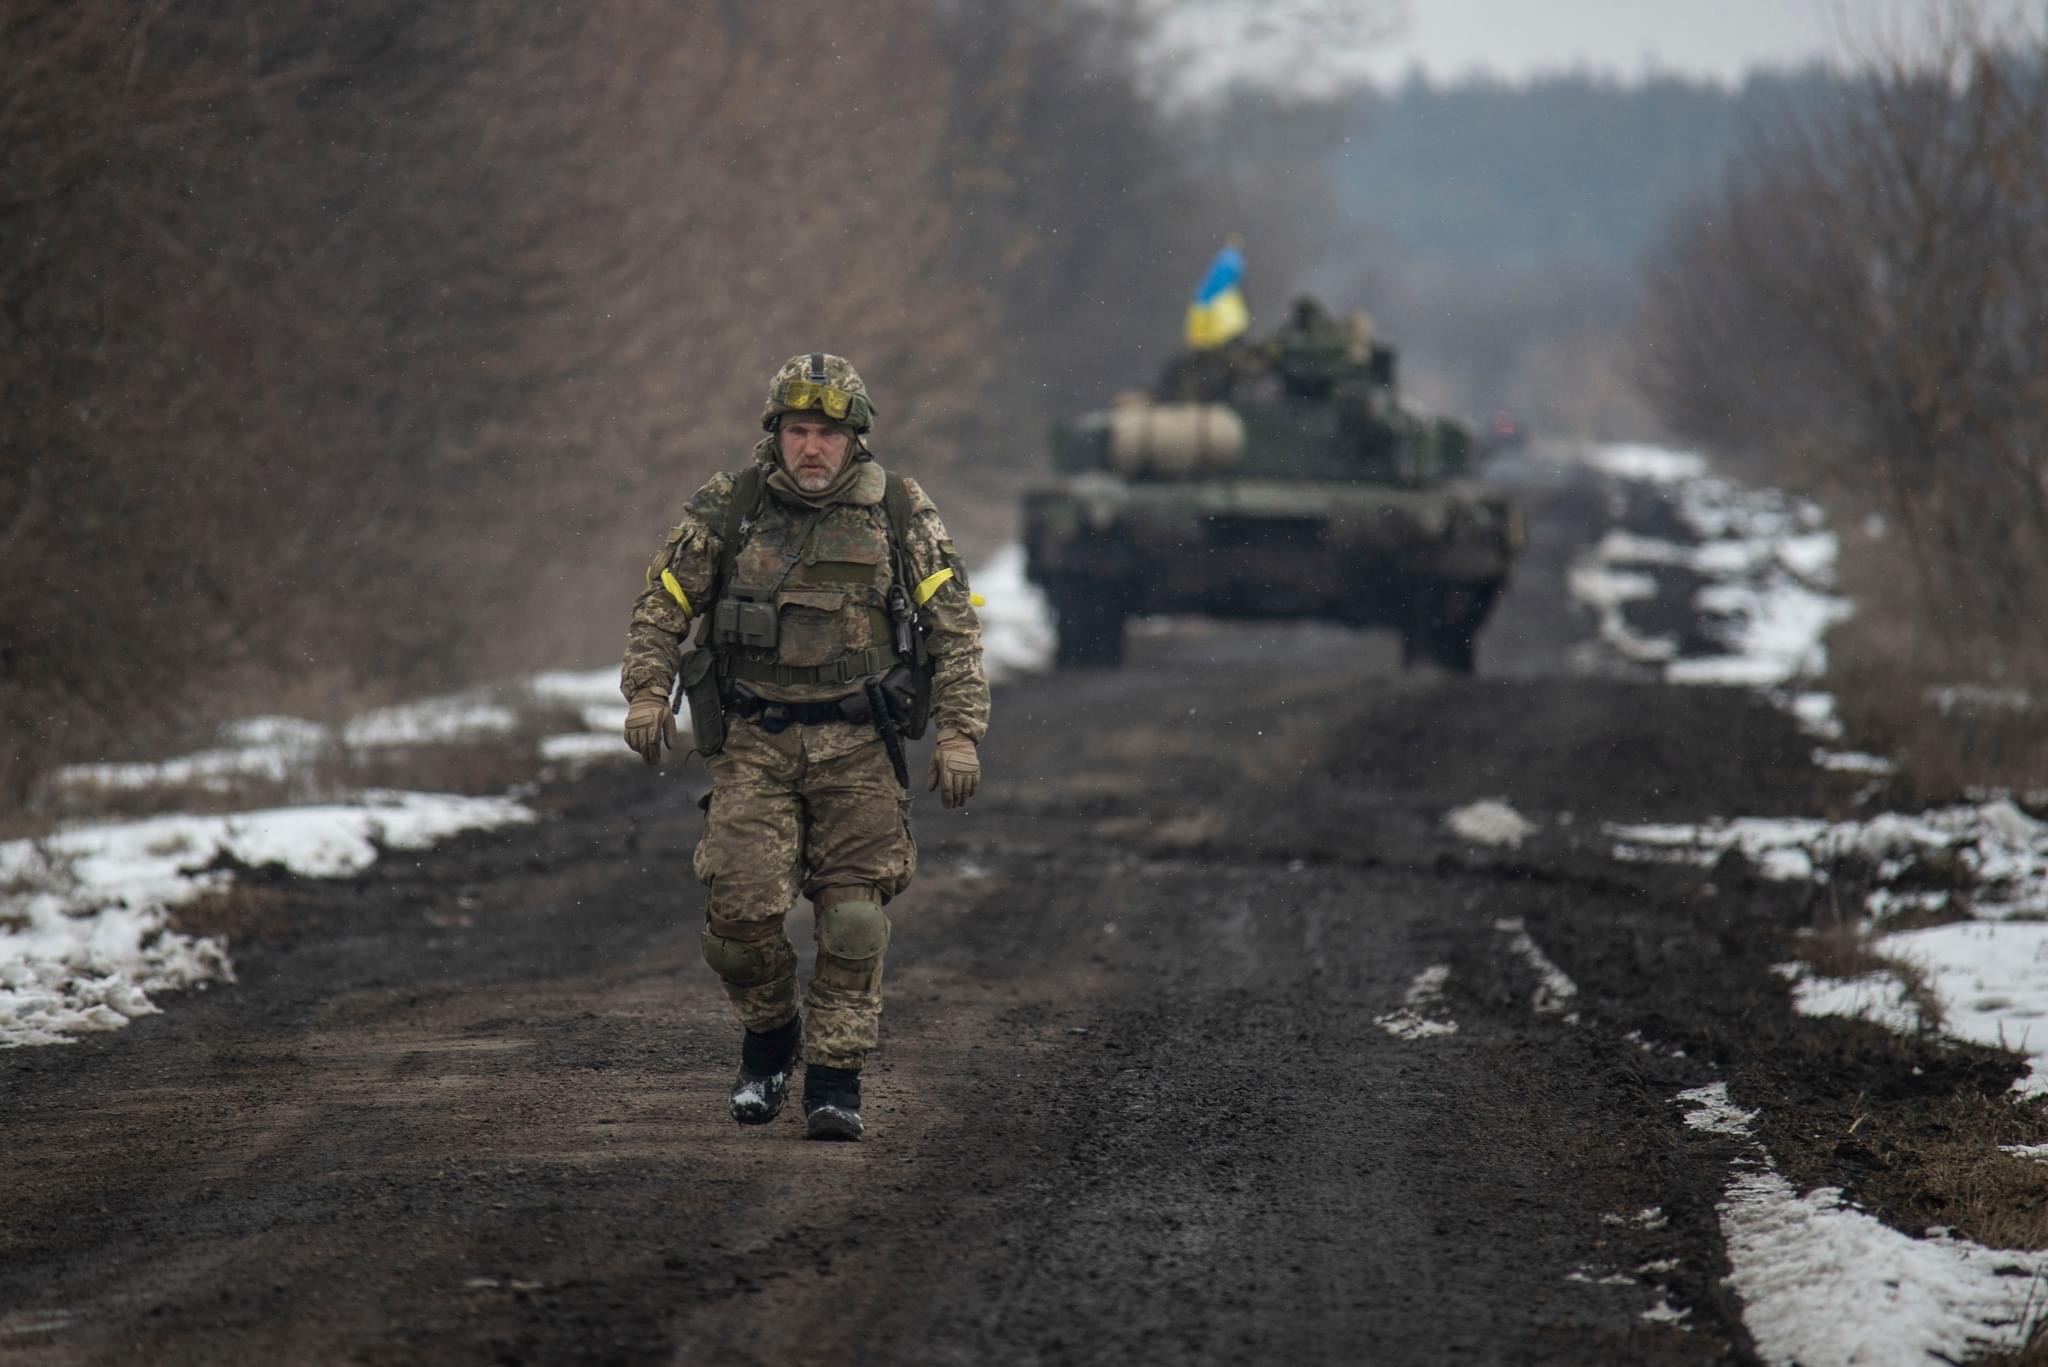 Guerra in Ucraina, Joe Biden invierà 31 carri armati Abrams